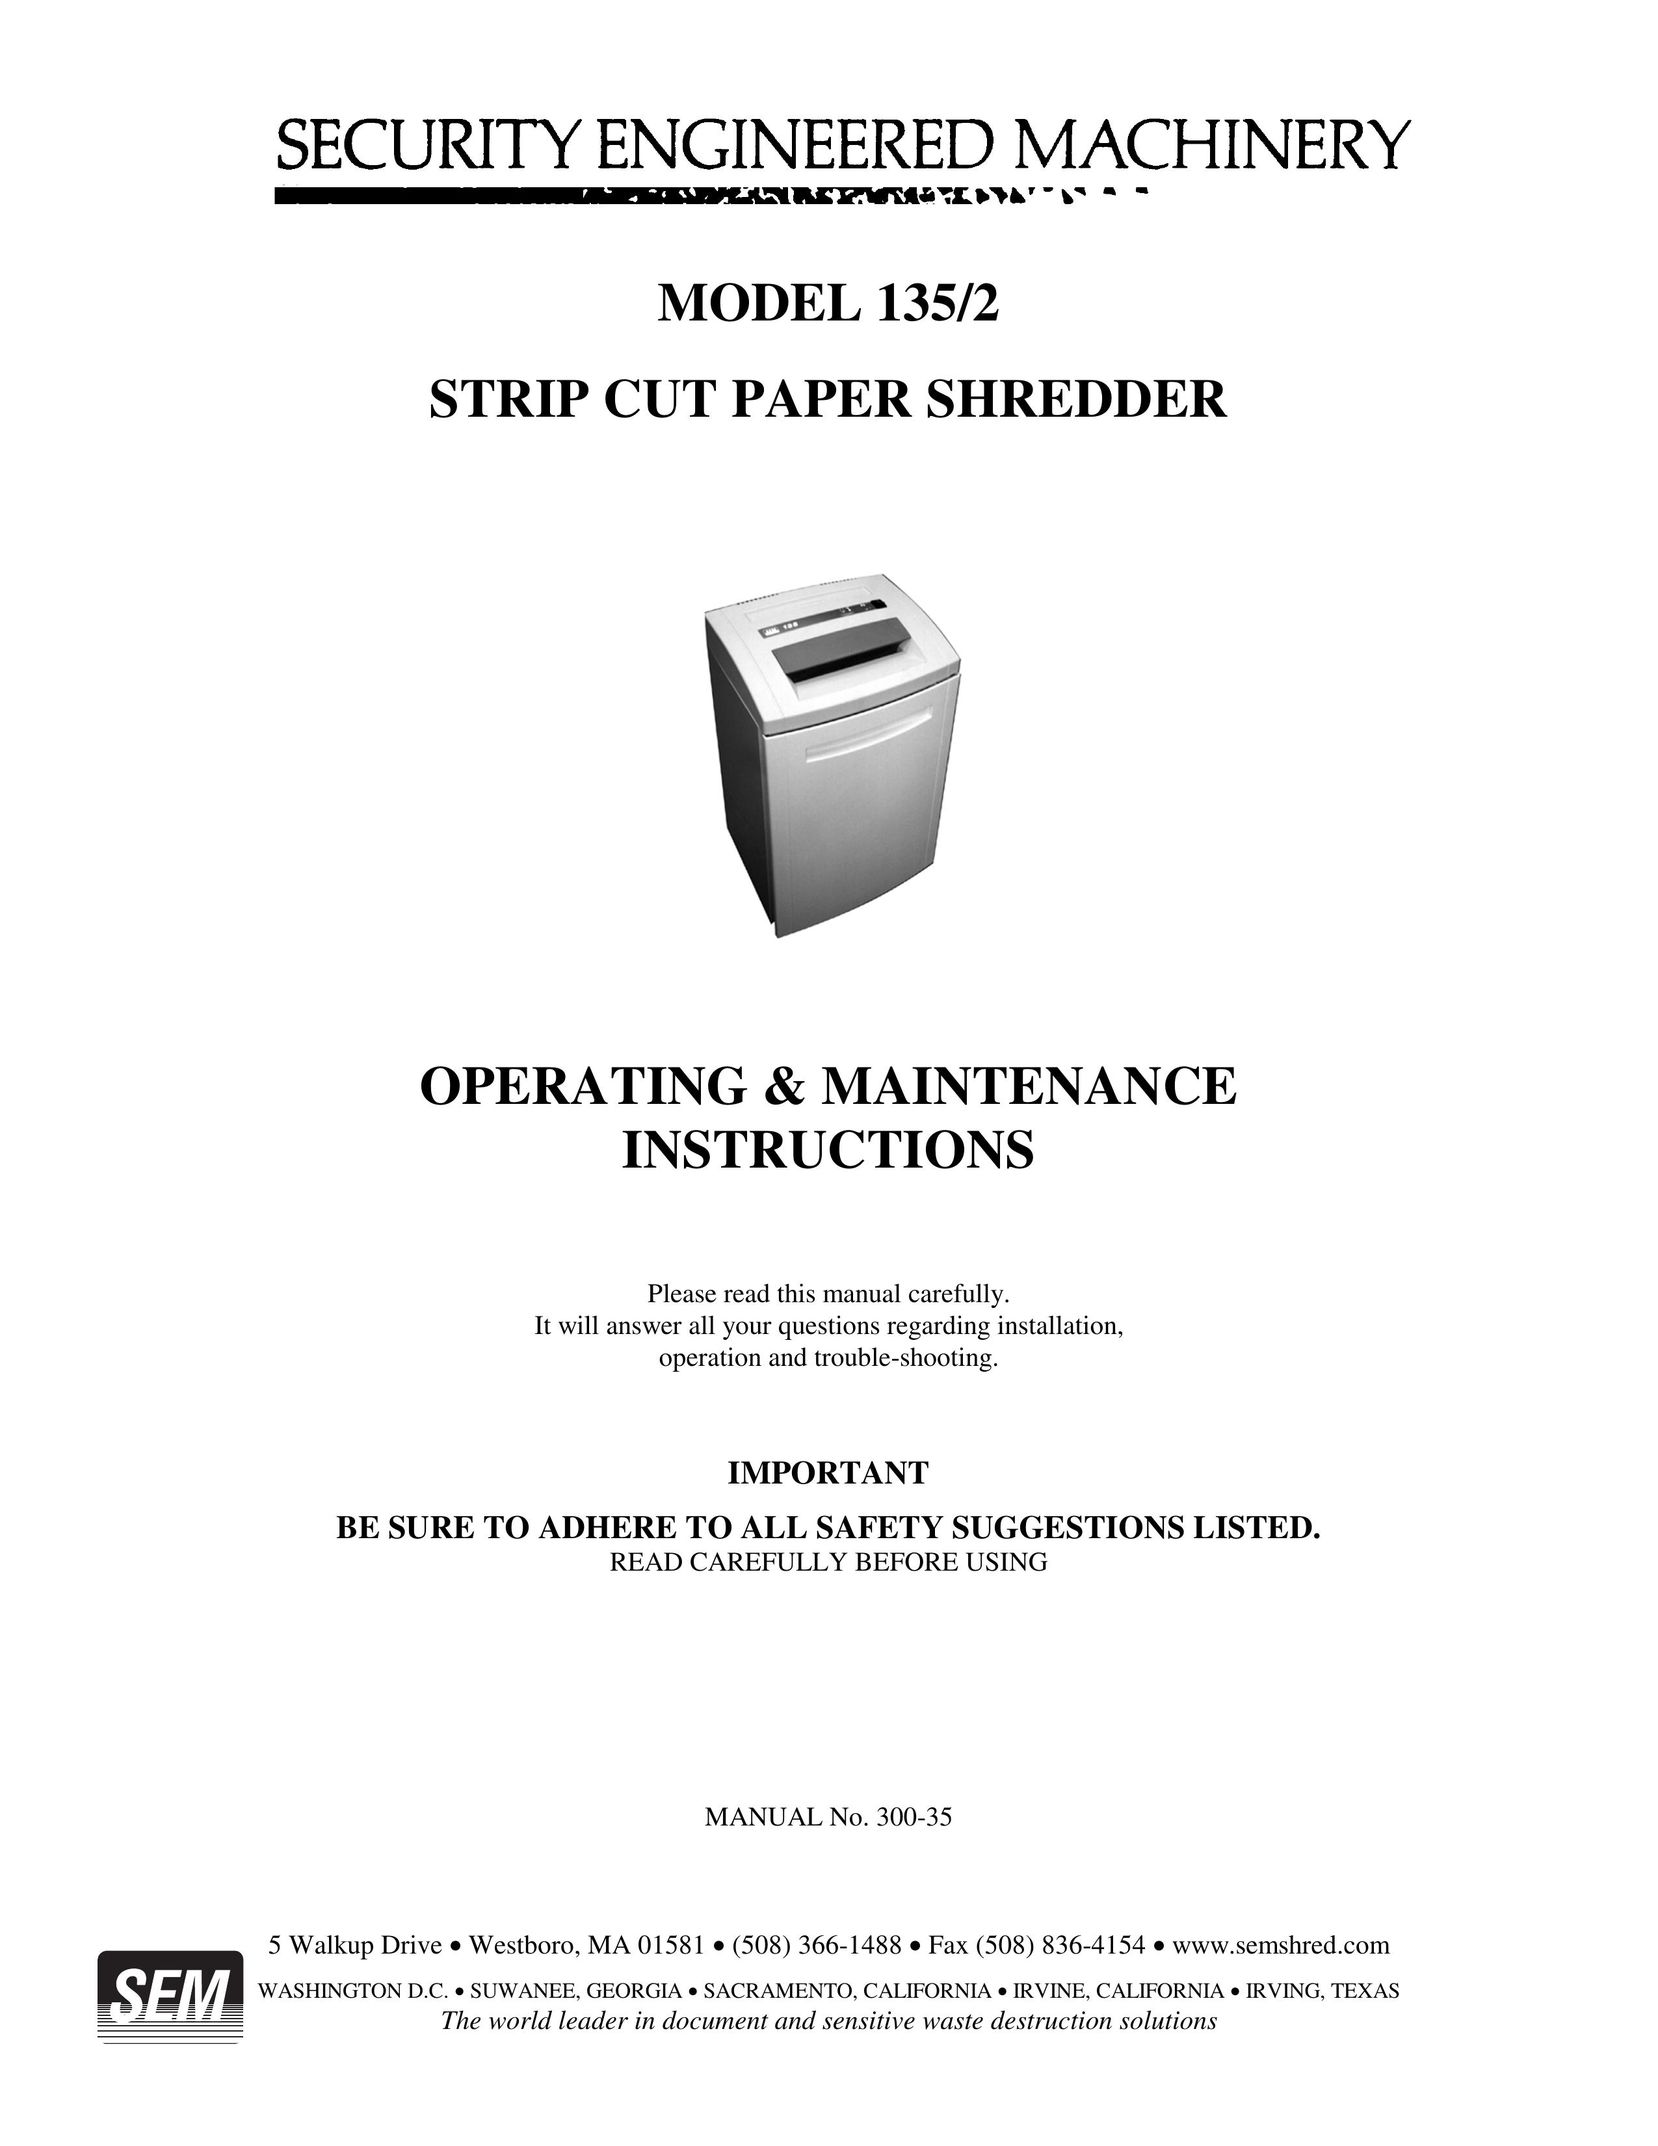 SEM 135/2 Paper Shredder User Manual